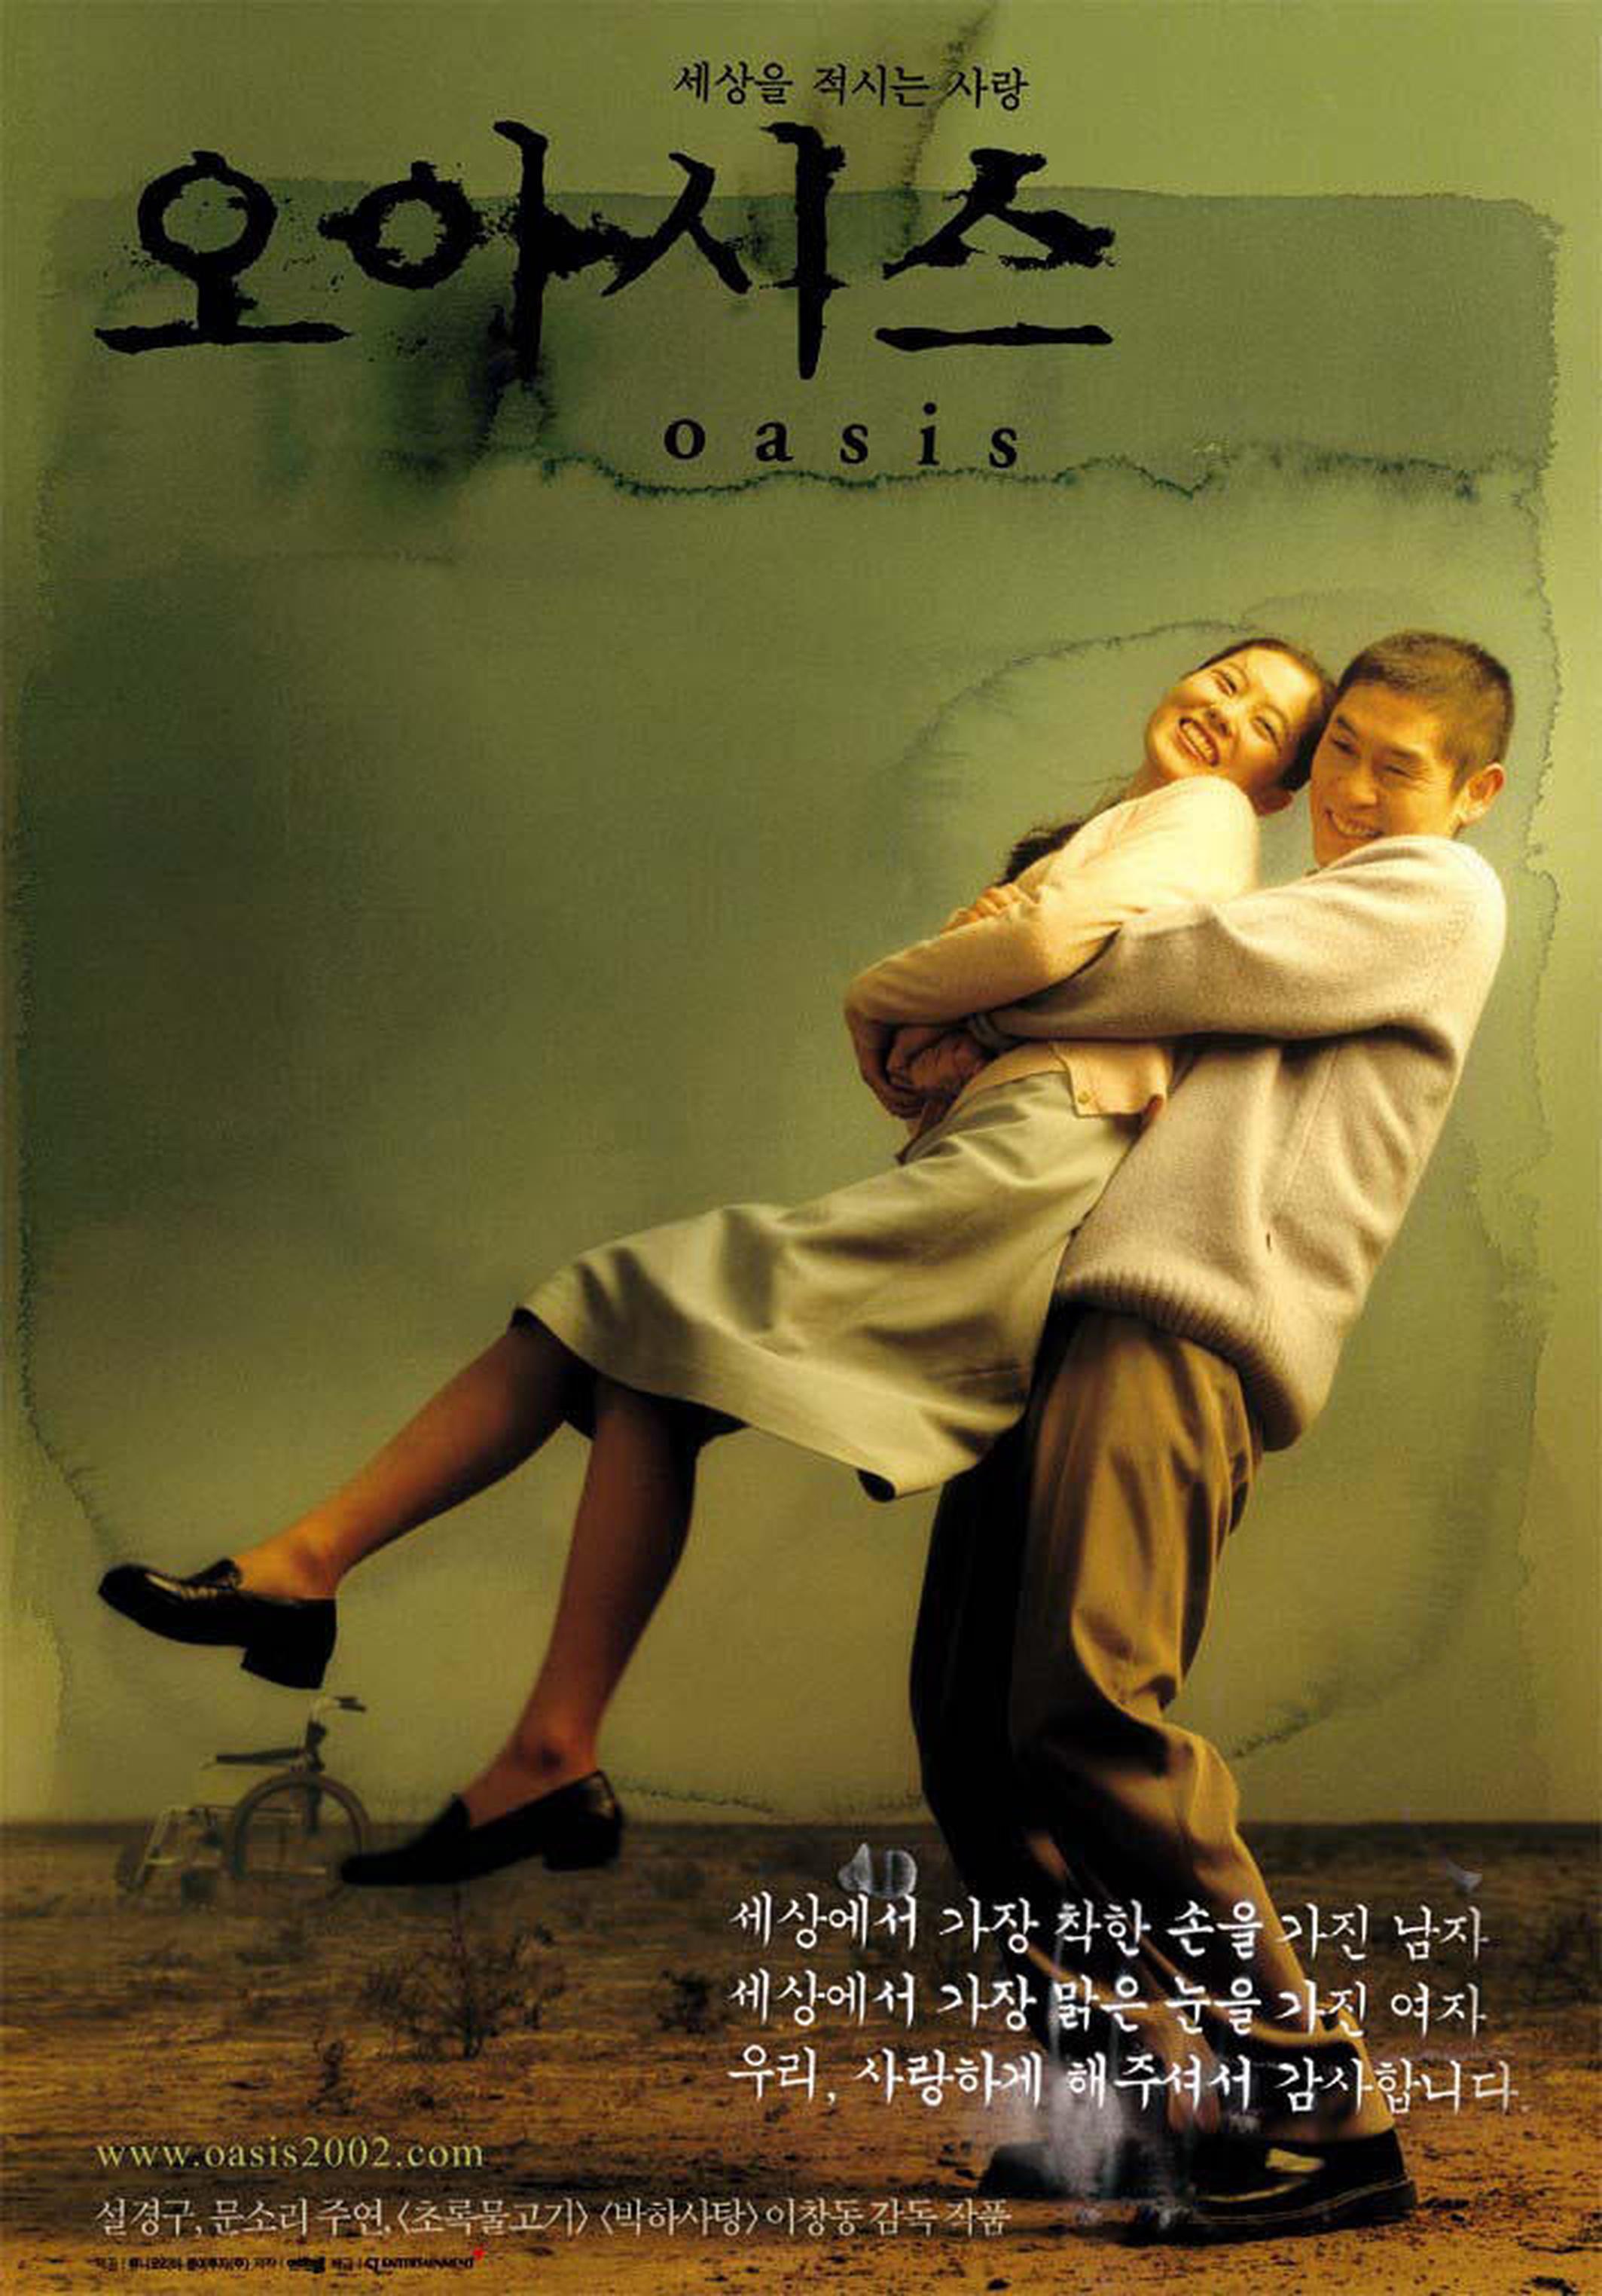 【2000-2010】《绿洲》 (2002)导演李沧东。入围第59届威尼斯电影节主竞赛单元。